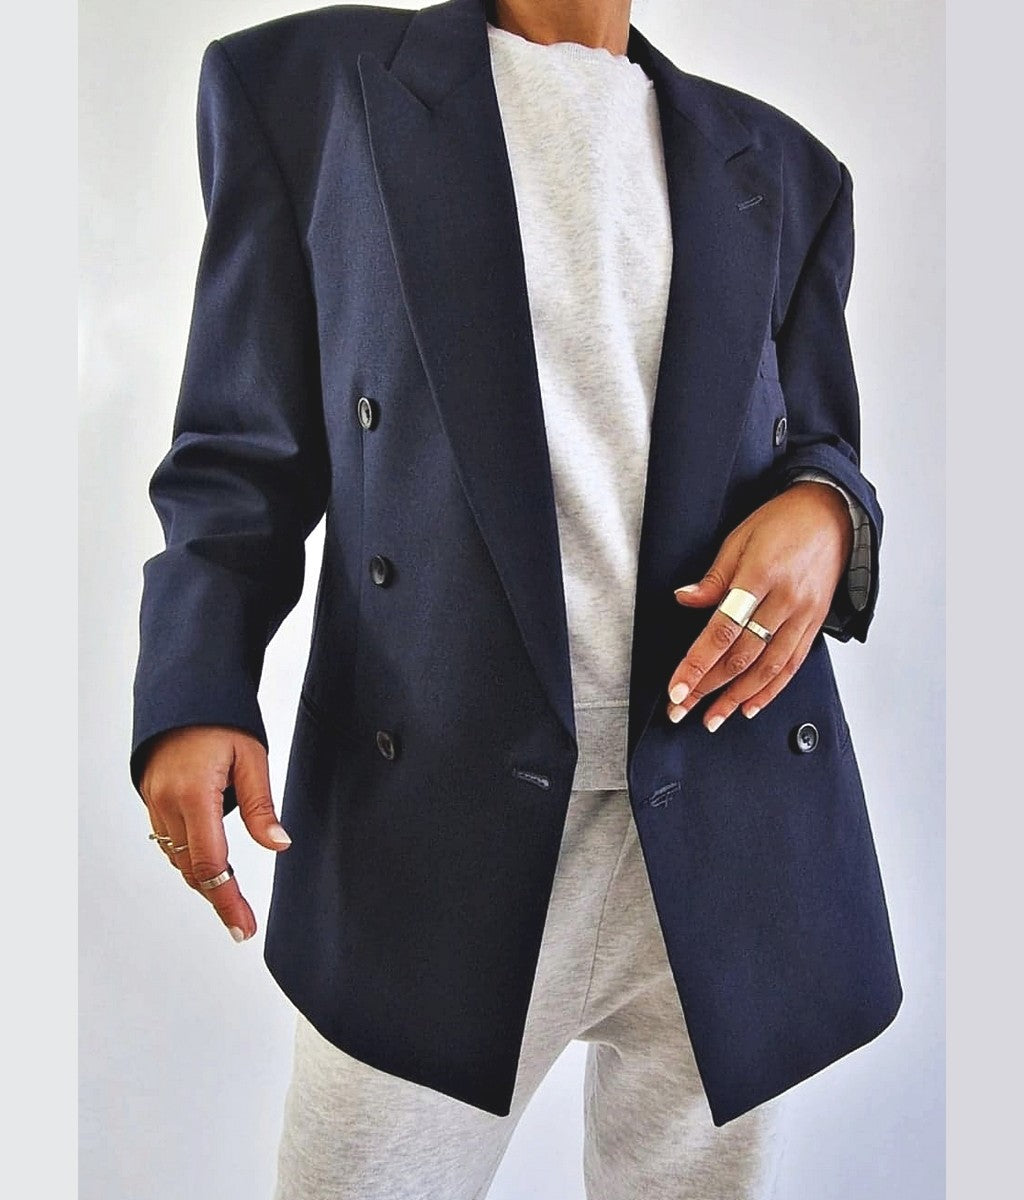 blazer bleu marine vintage pour femme taille medium large Bruxelles Belgique